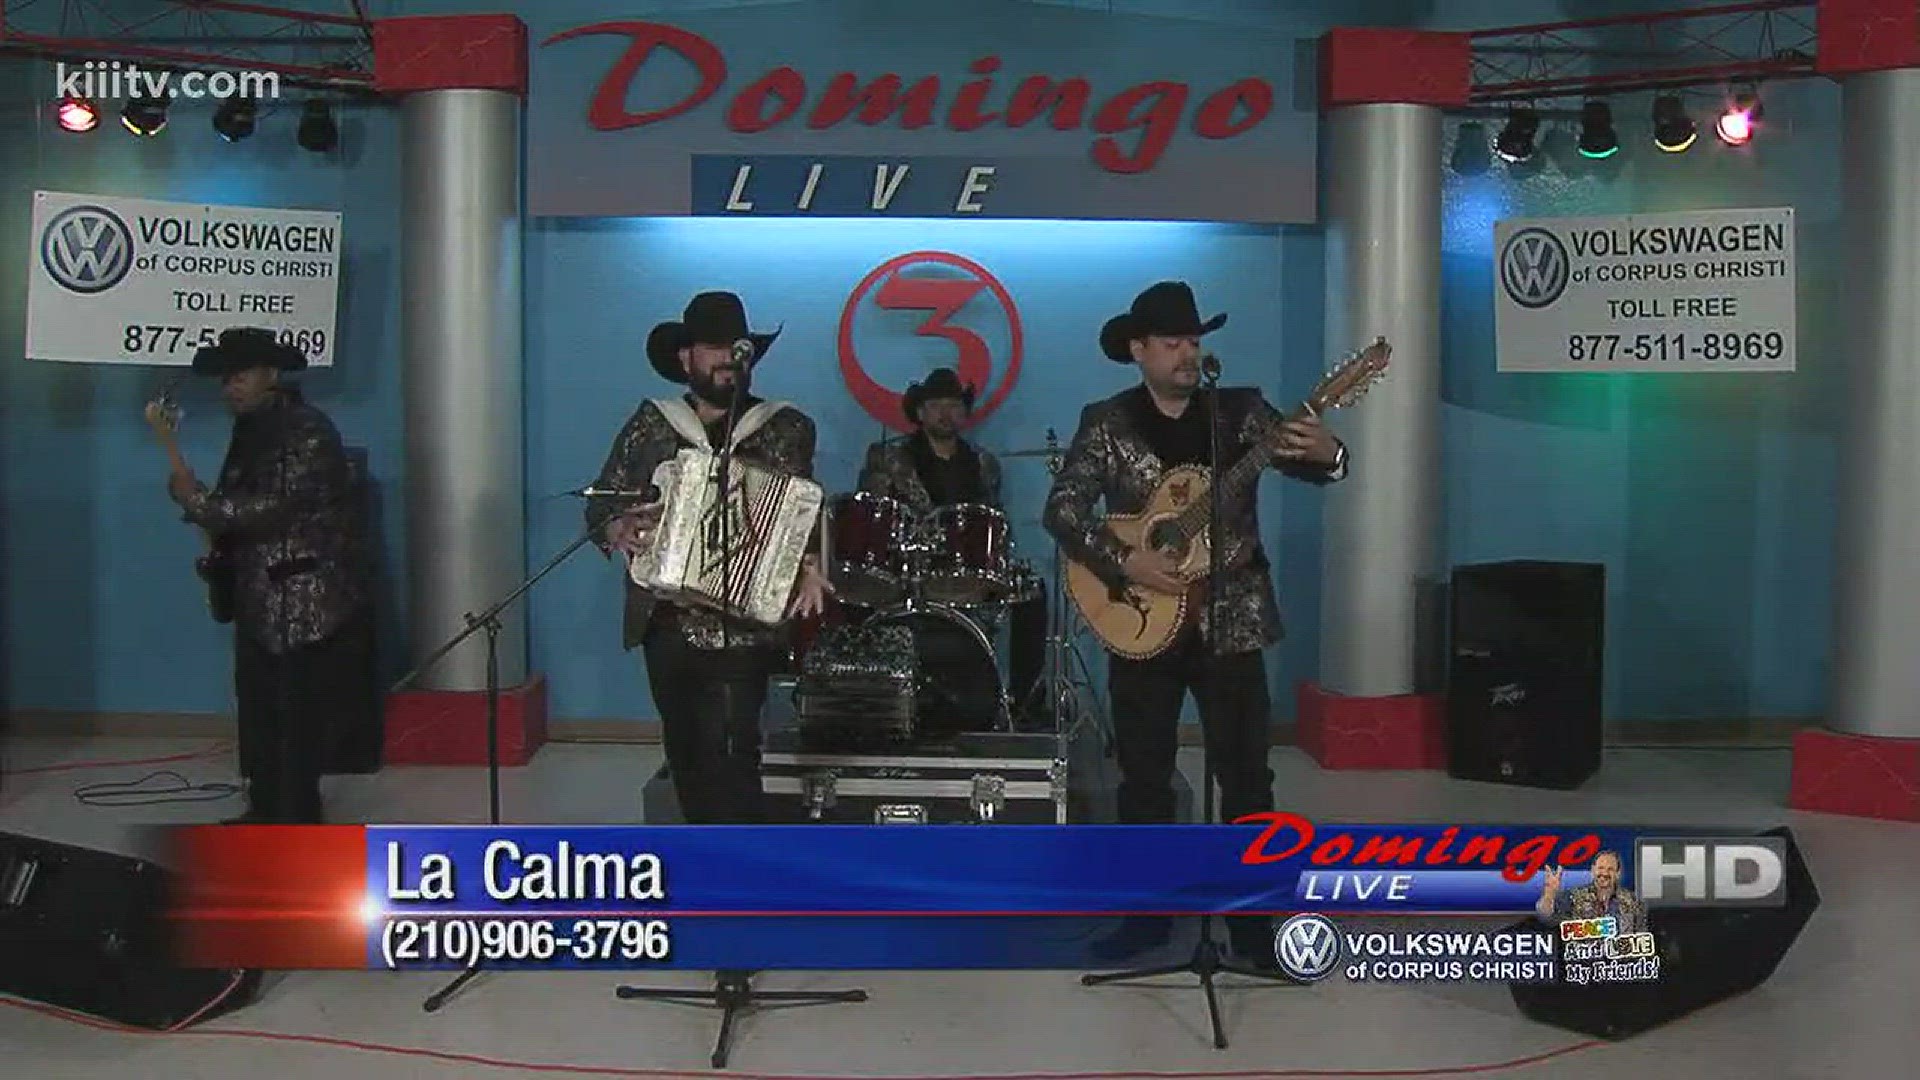 La Calma Performing "Te Amo"